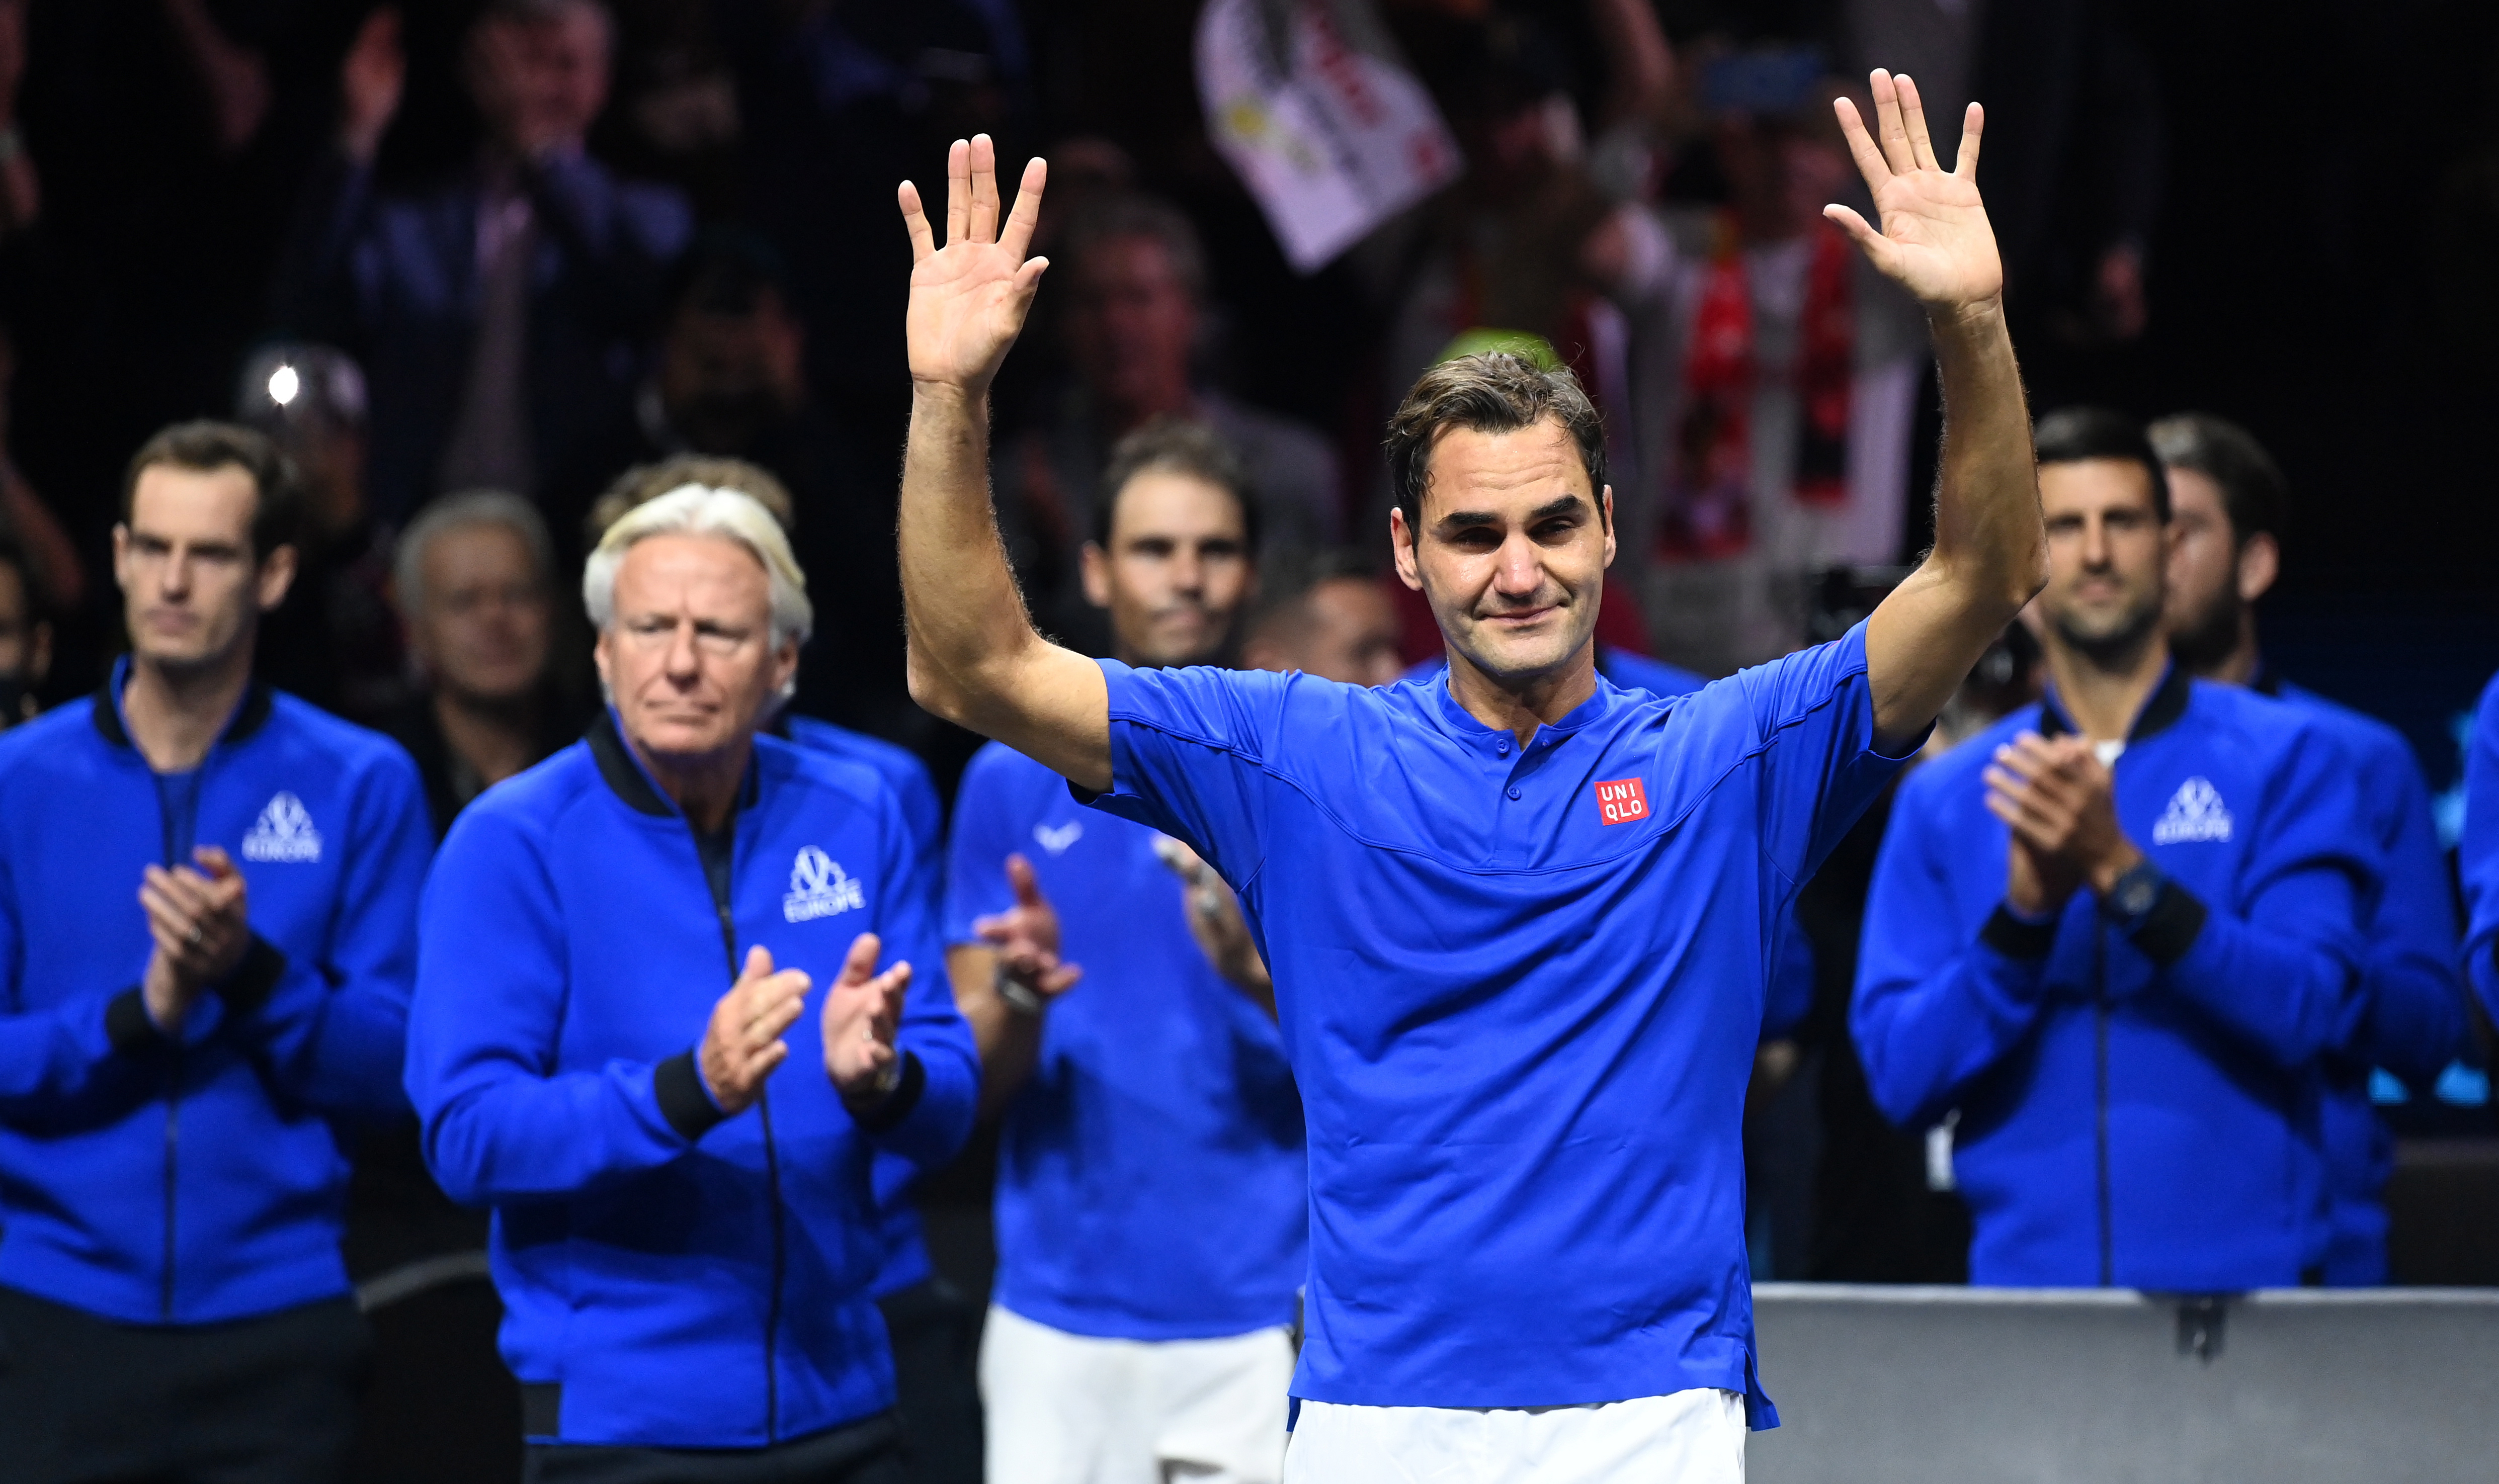 Roger Federer agradece el apoyo de la afición en su útimo partido profesional al tenis. (Foto Prensa Libre: EFE)
